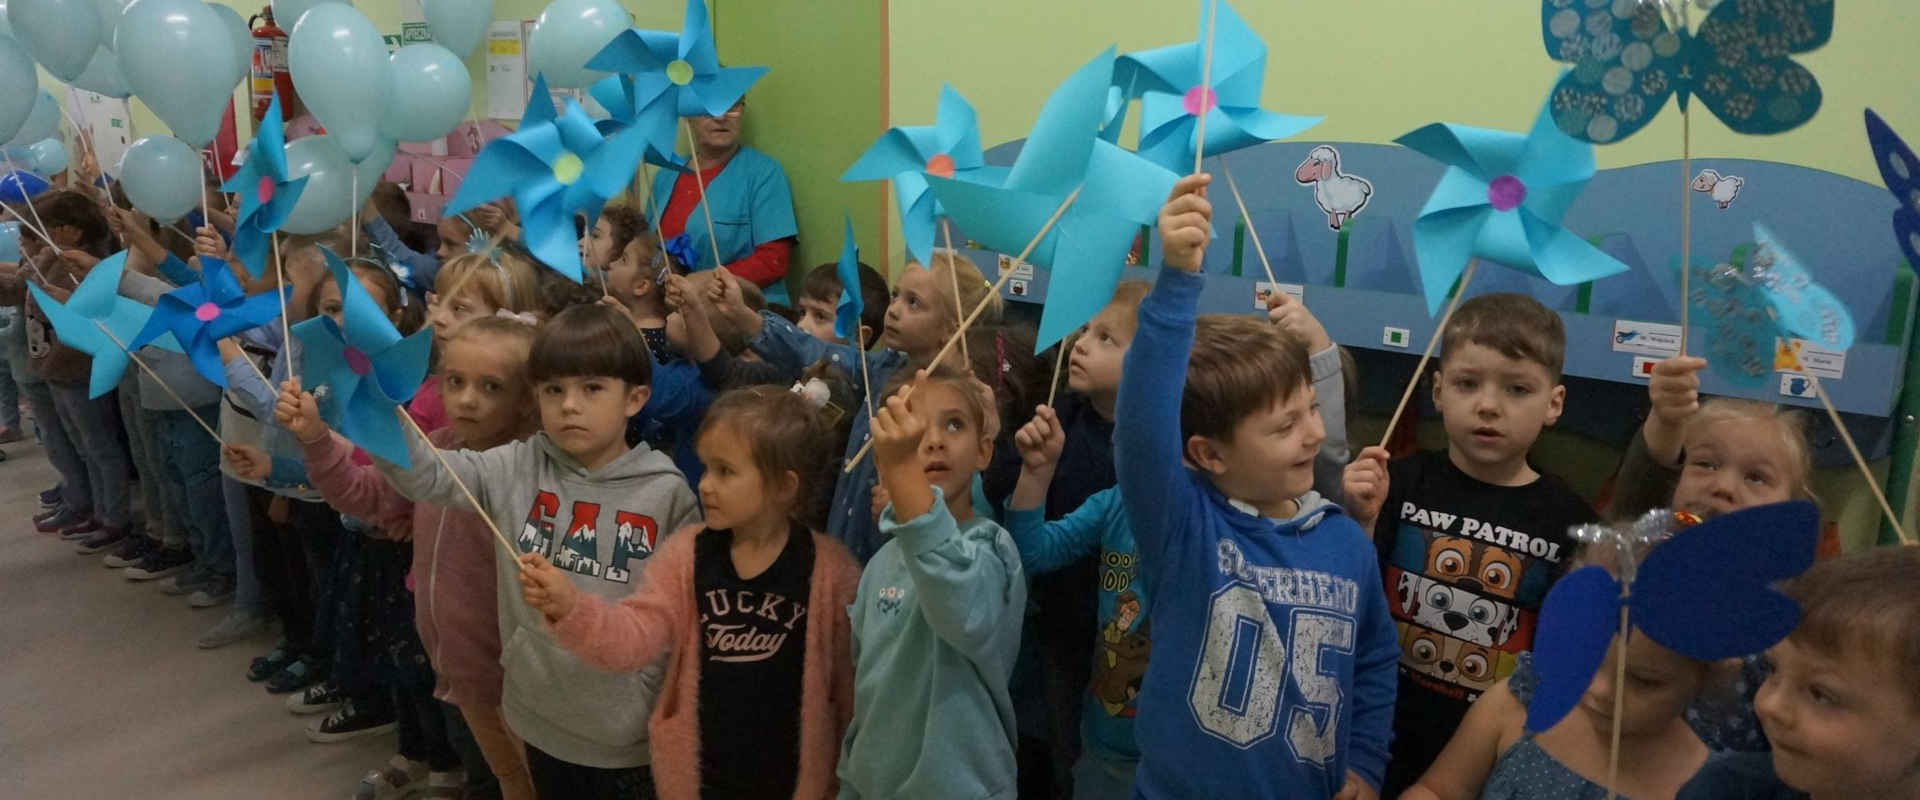 Dzieci z niebieskimi wiatraczkami